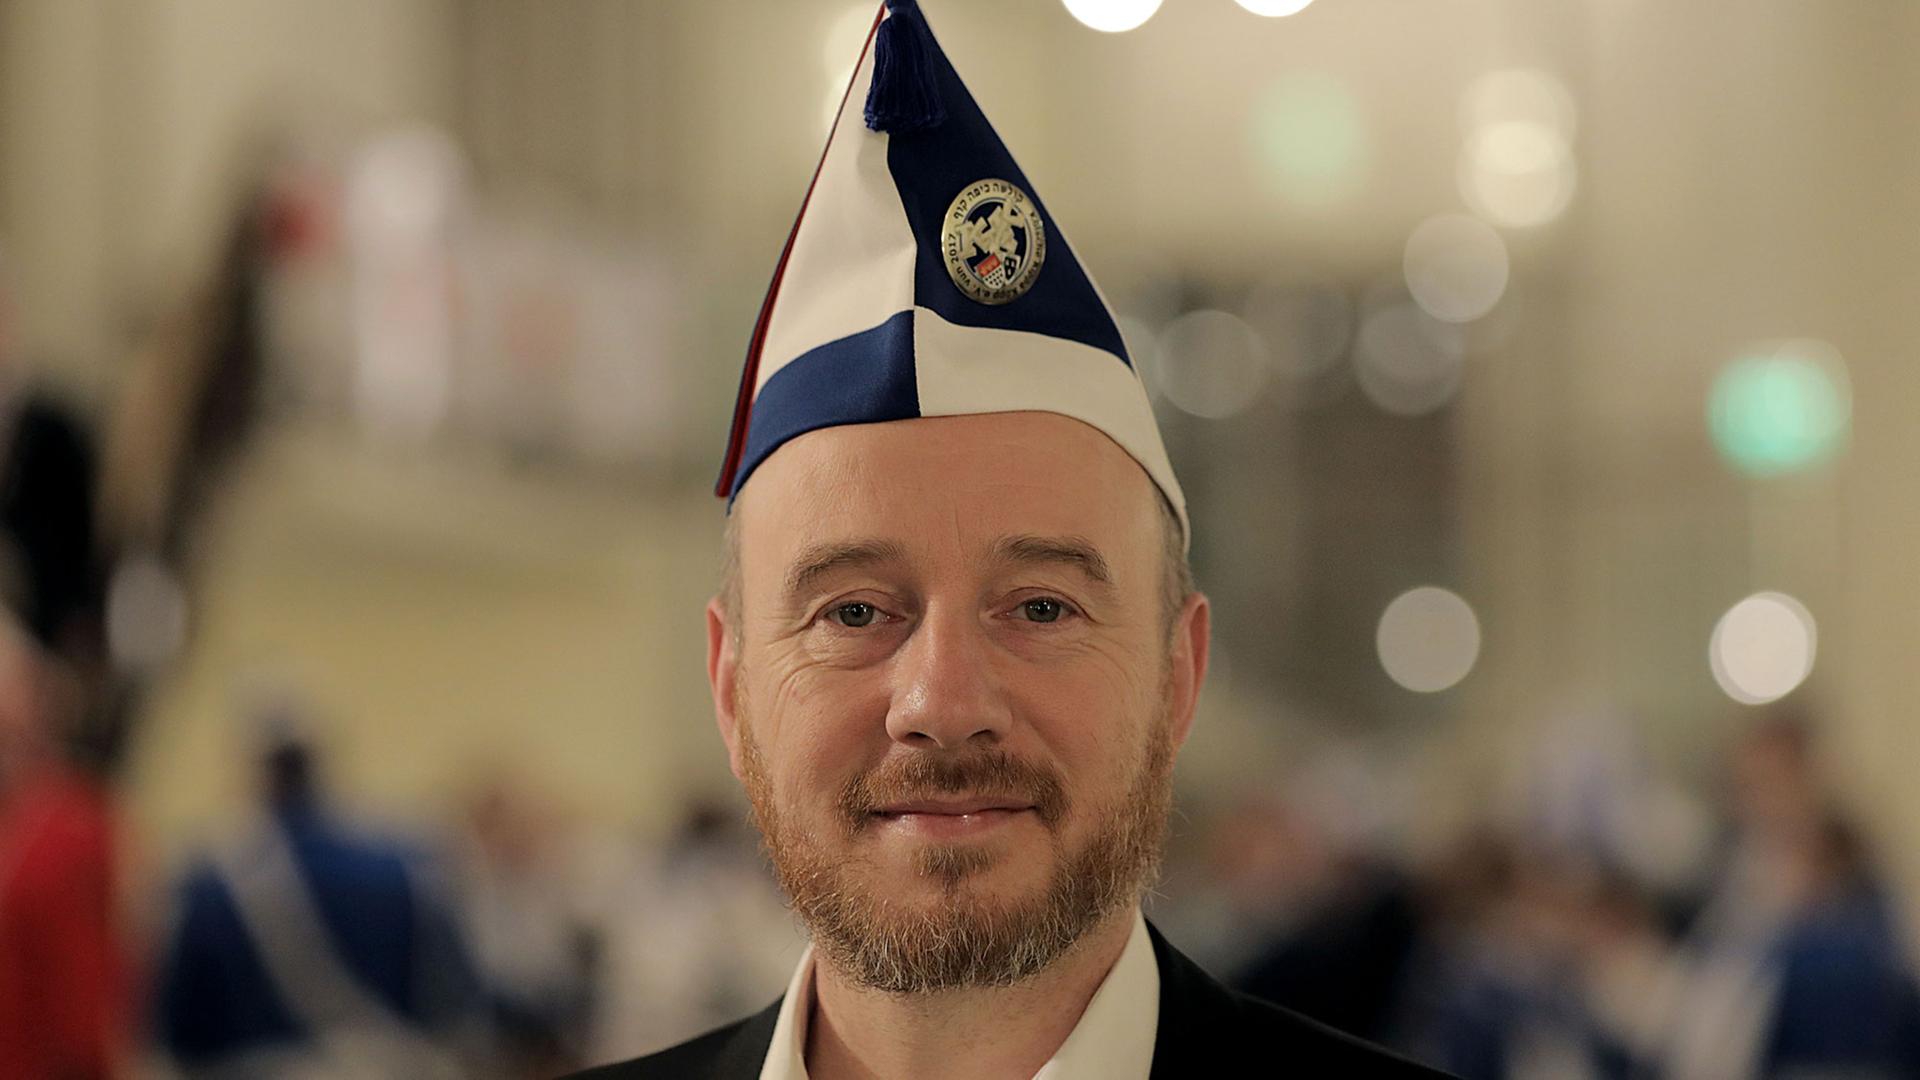 Aaron Knappstein, Präsident des jüdischen Karnevalsvereins "Kölsche Kippa Köpp", steht vor dem Besuch einer Sitzung im Foyer einer Halle in Köln.